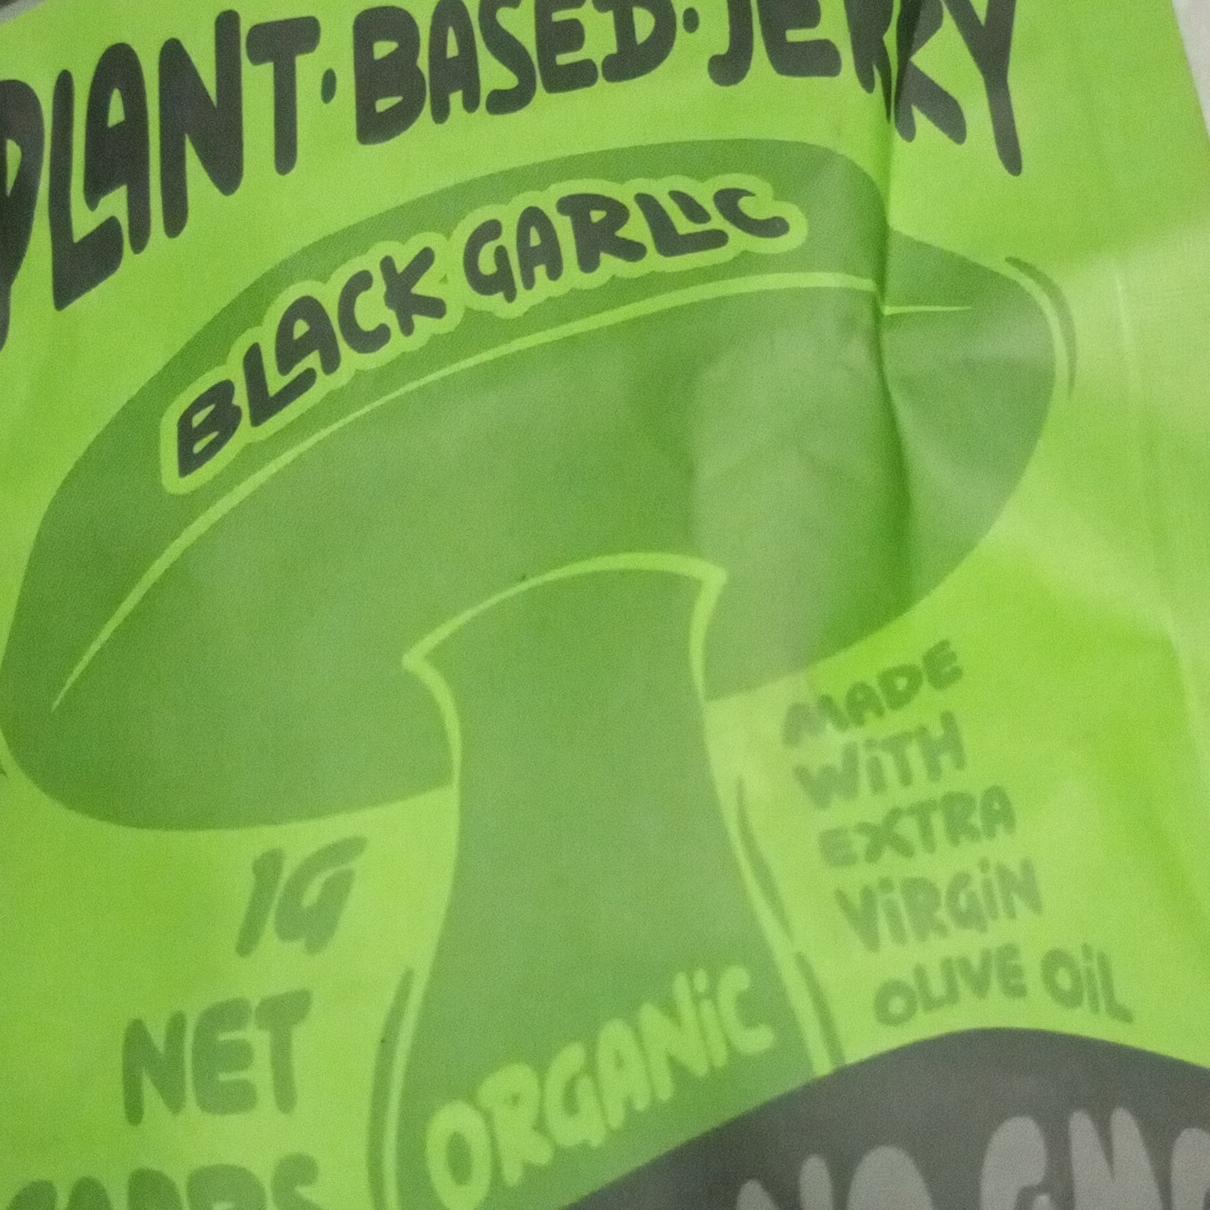 Fotografie - Plant Based Jerky Black Garlic Cherky